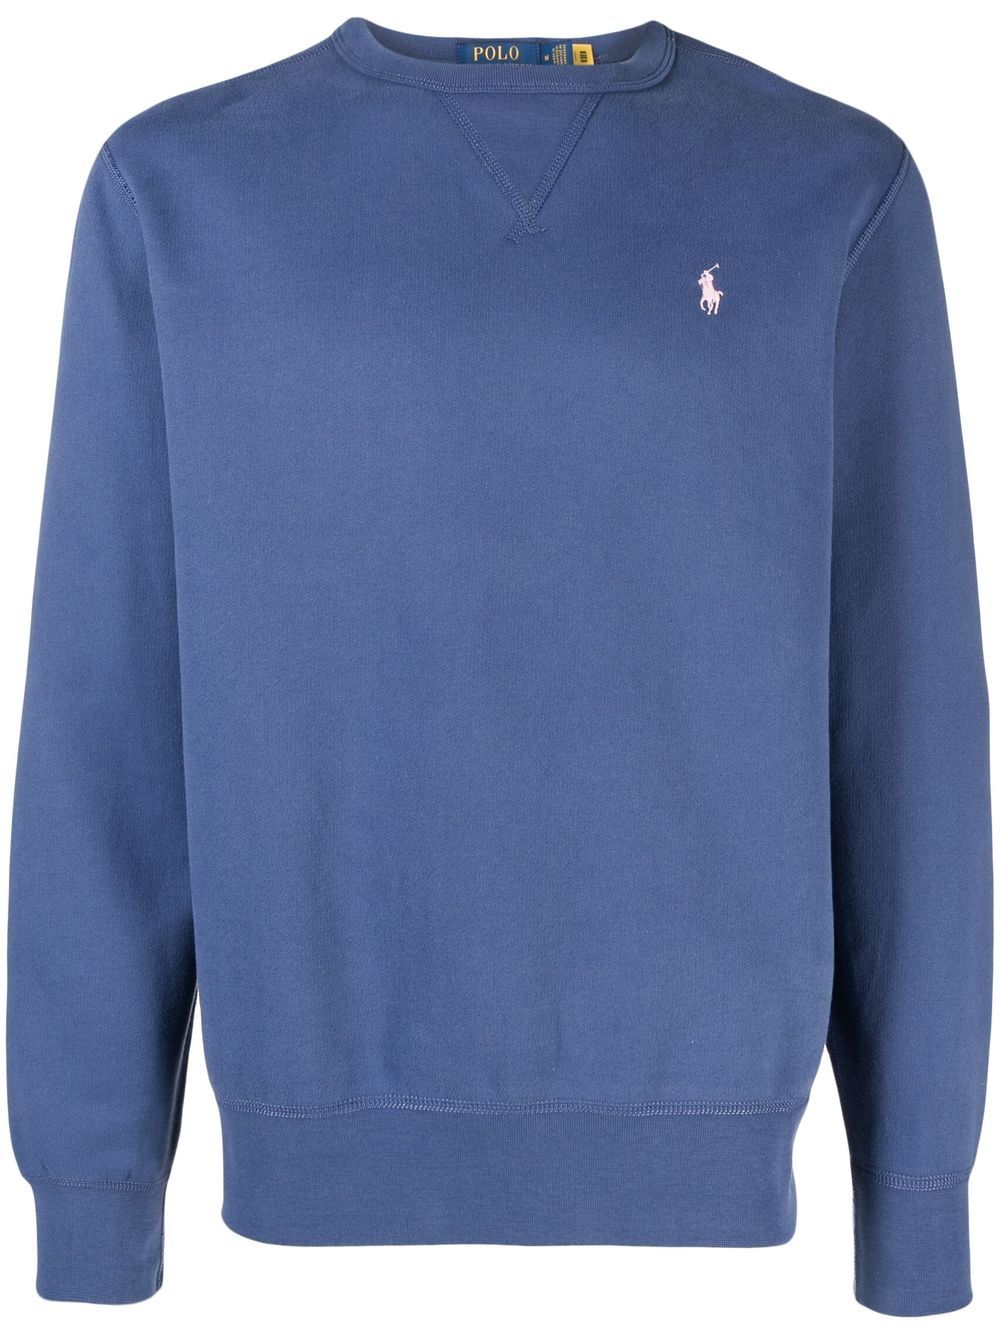 Polo Ralph Lauren Sweatshirt mit rundem Ausschnitt - Blau von Polo Ralph Lauren